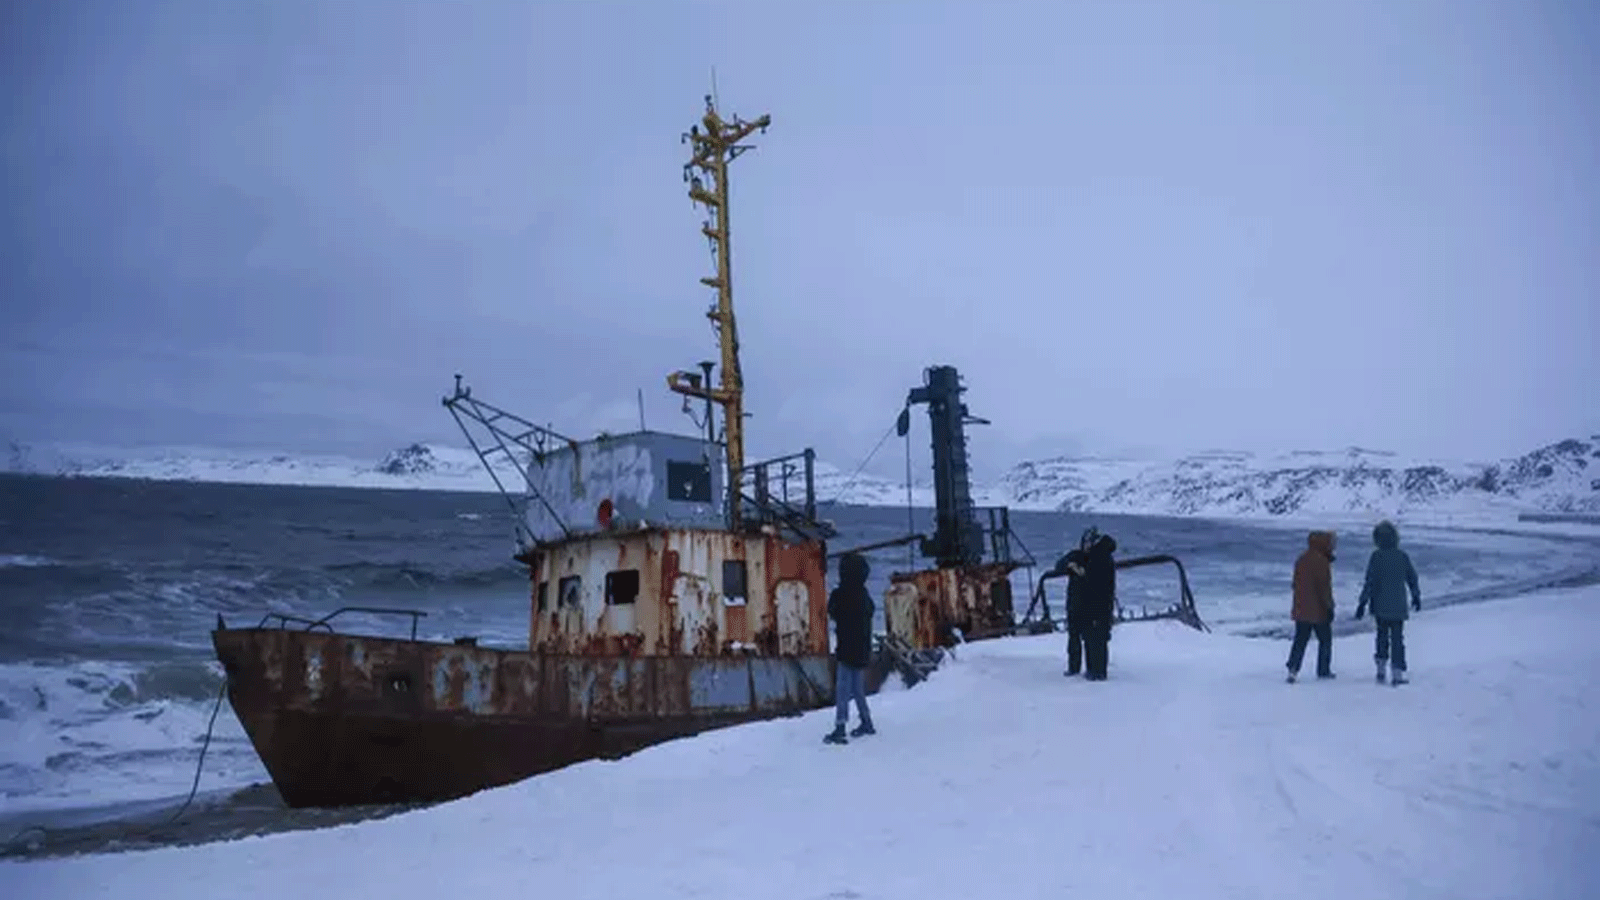 يزور السياح تيرييركا (Teriberka) القرية الروسية خارج الدائرة القطبية الشمالية، حيث توجد العديد من قوارب الصيد مهجورة على الشاطئ